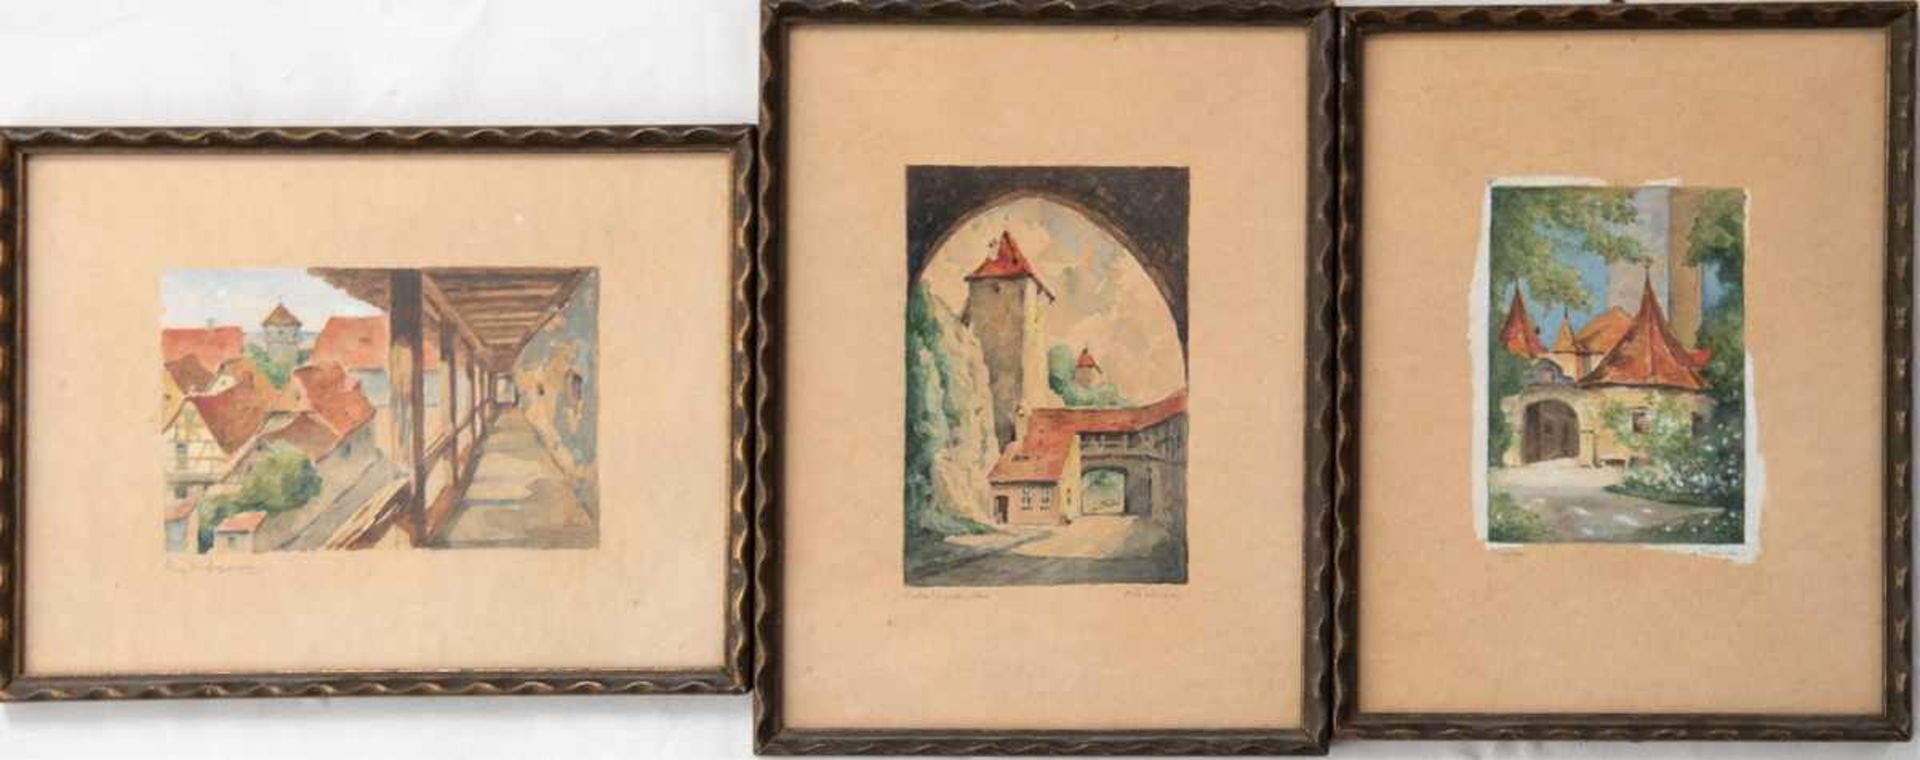 Konv. 3 Aquarelle, Fiebiger, A., "Burgansicht", 9,5x6,5 cm, "Im Laubengang", 6x9,5 cm, u."Konv. 3